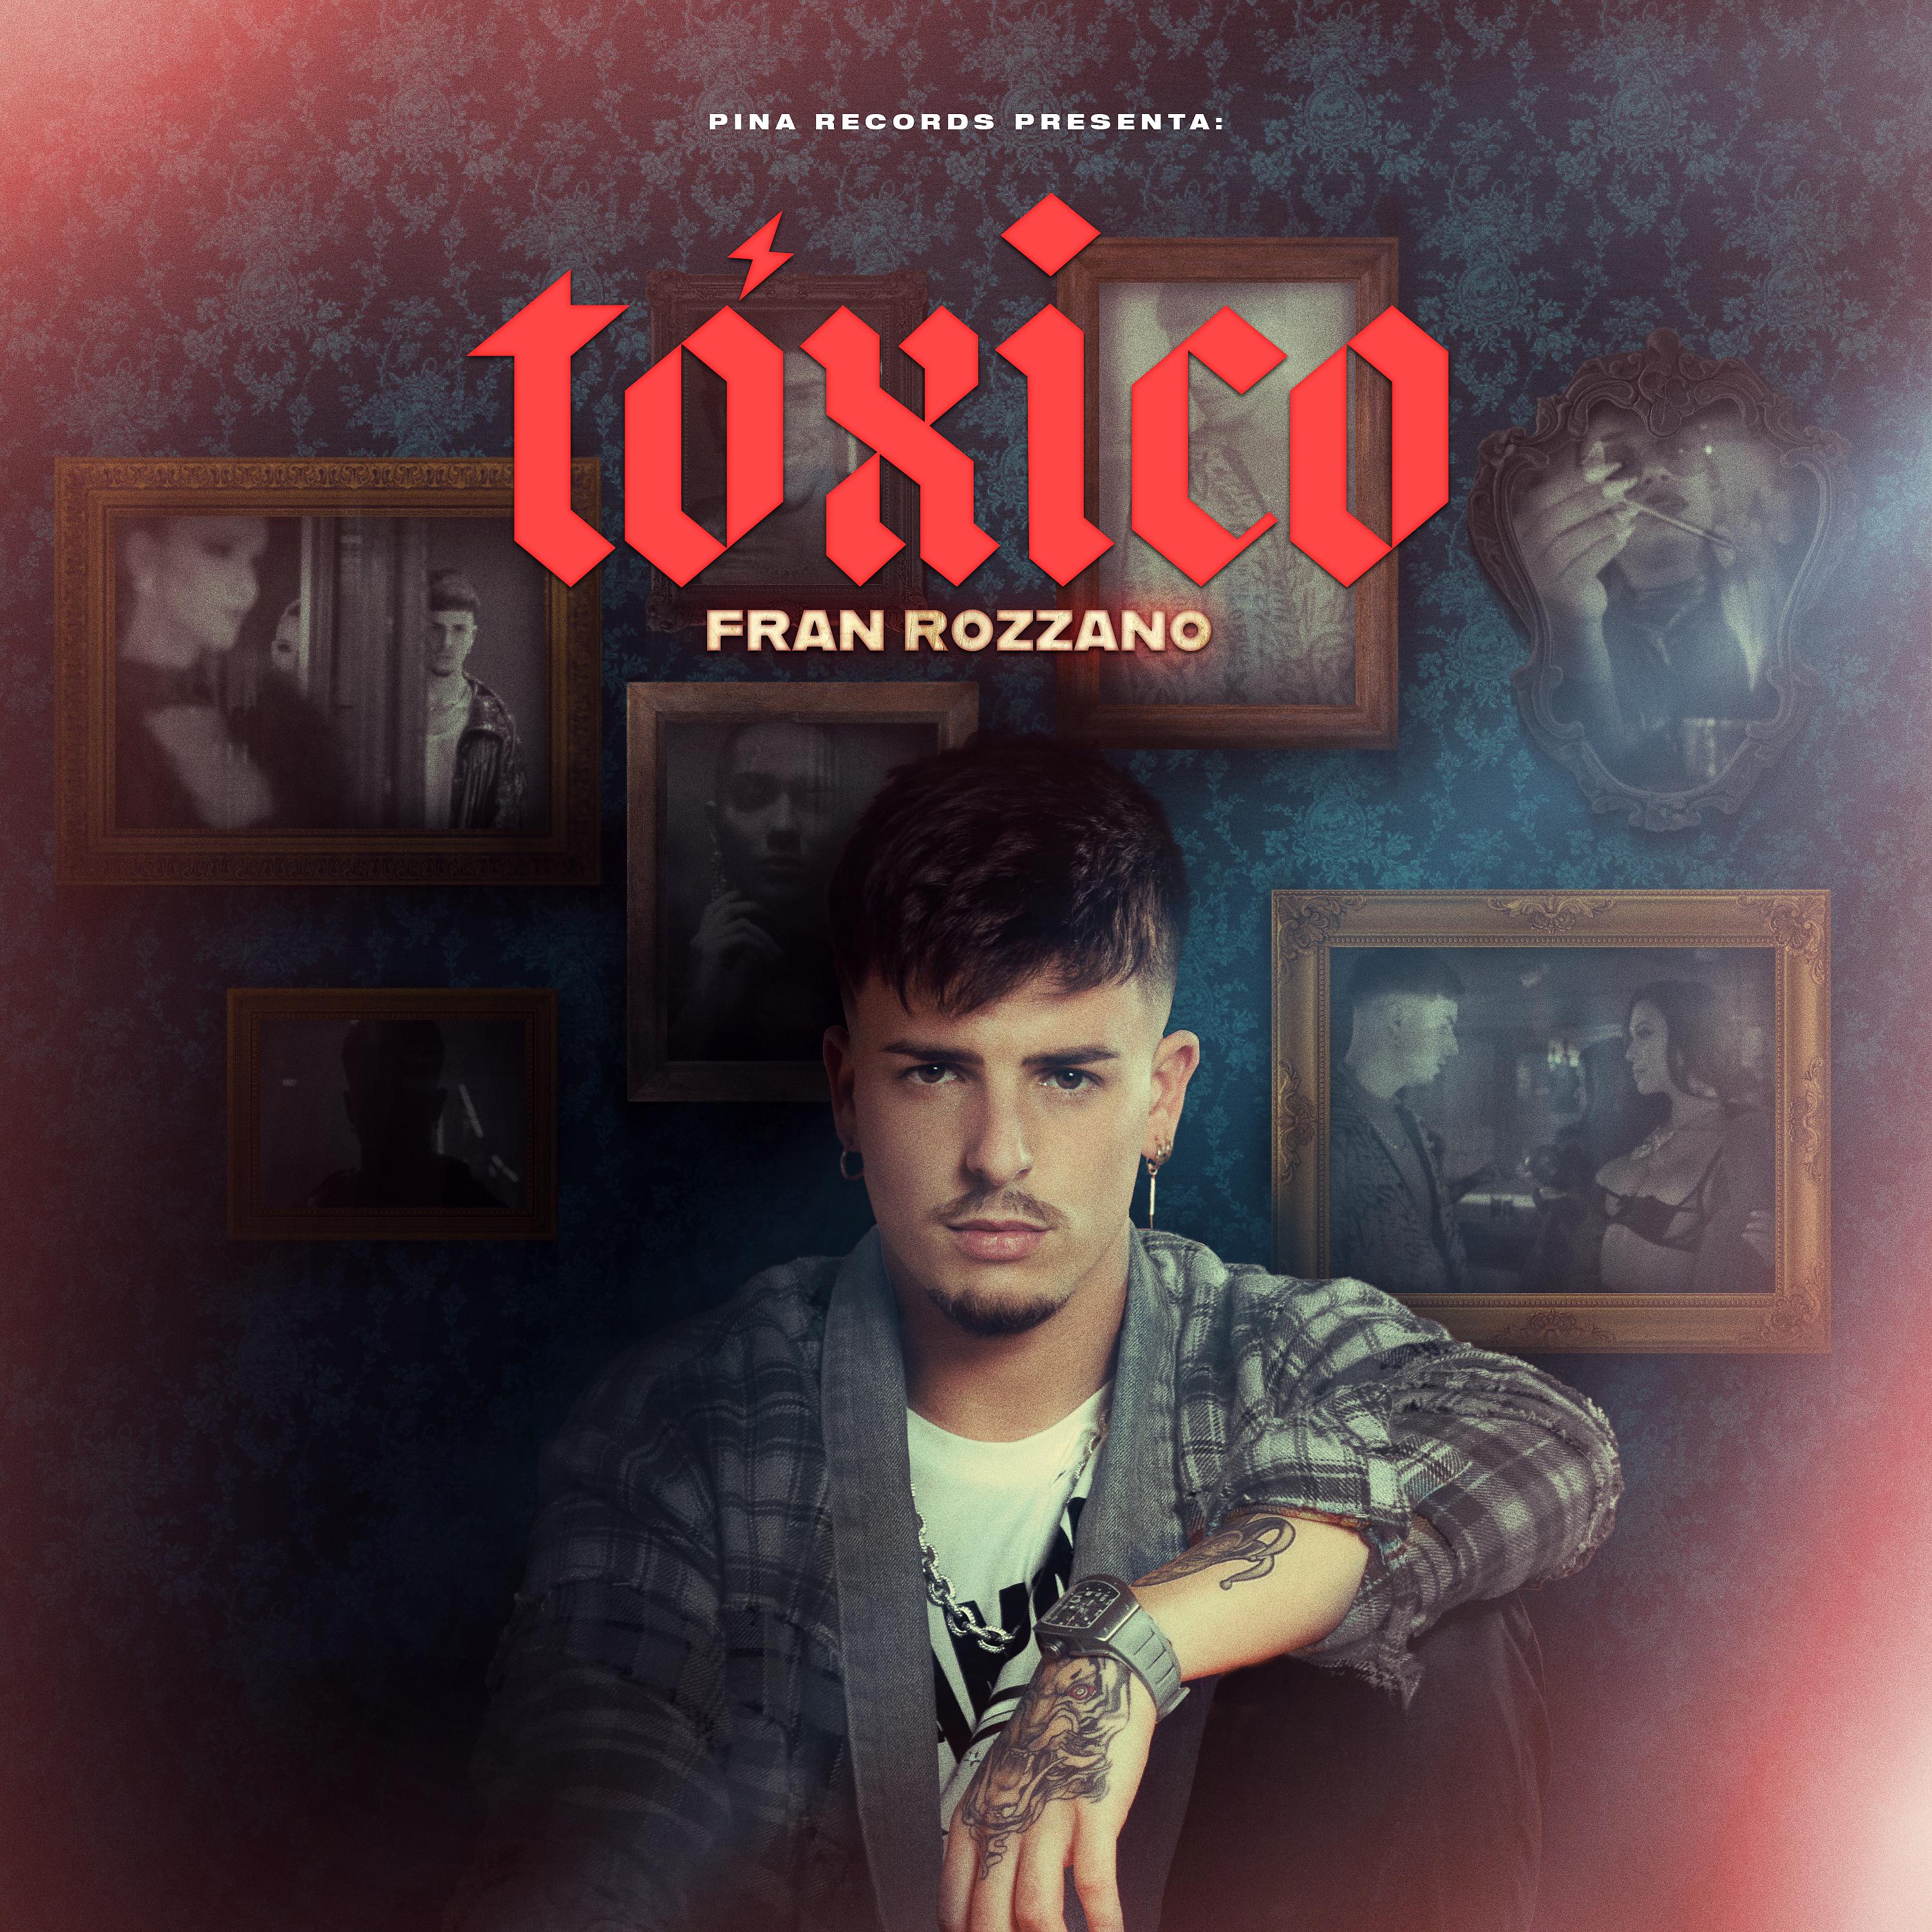 Постер альбома Tóxico